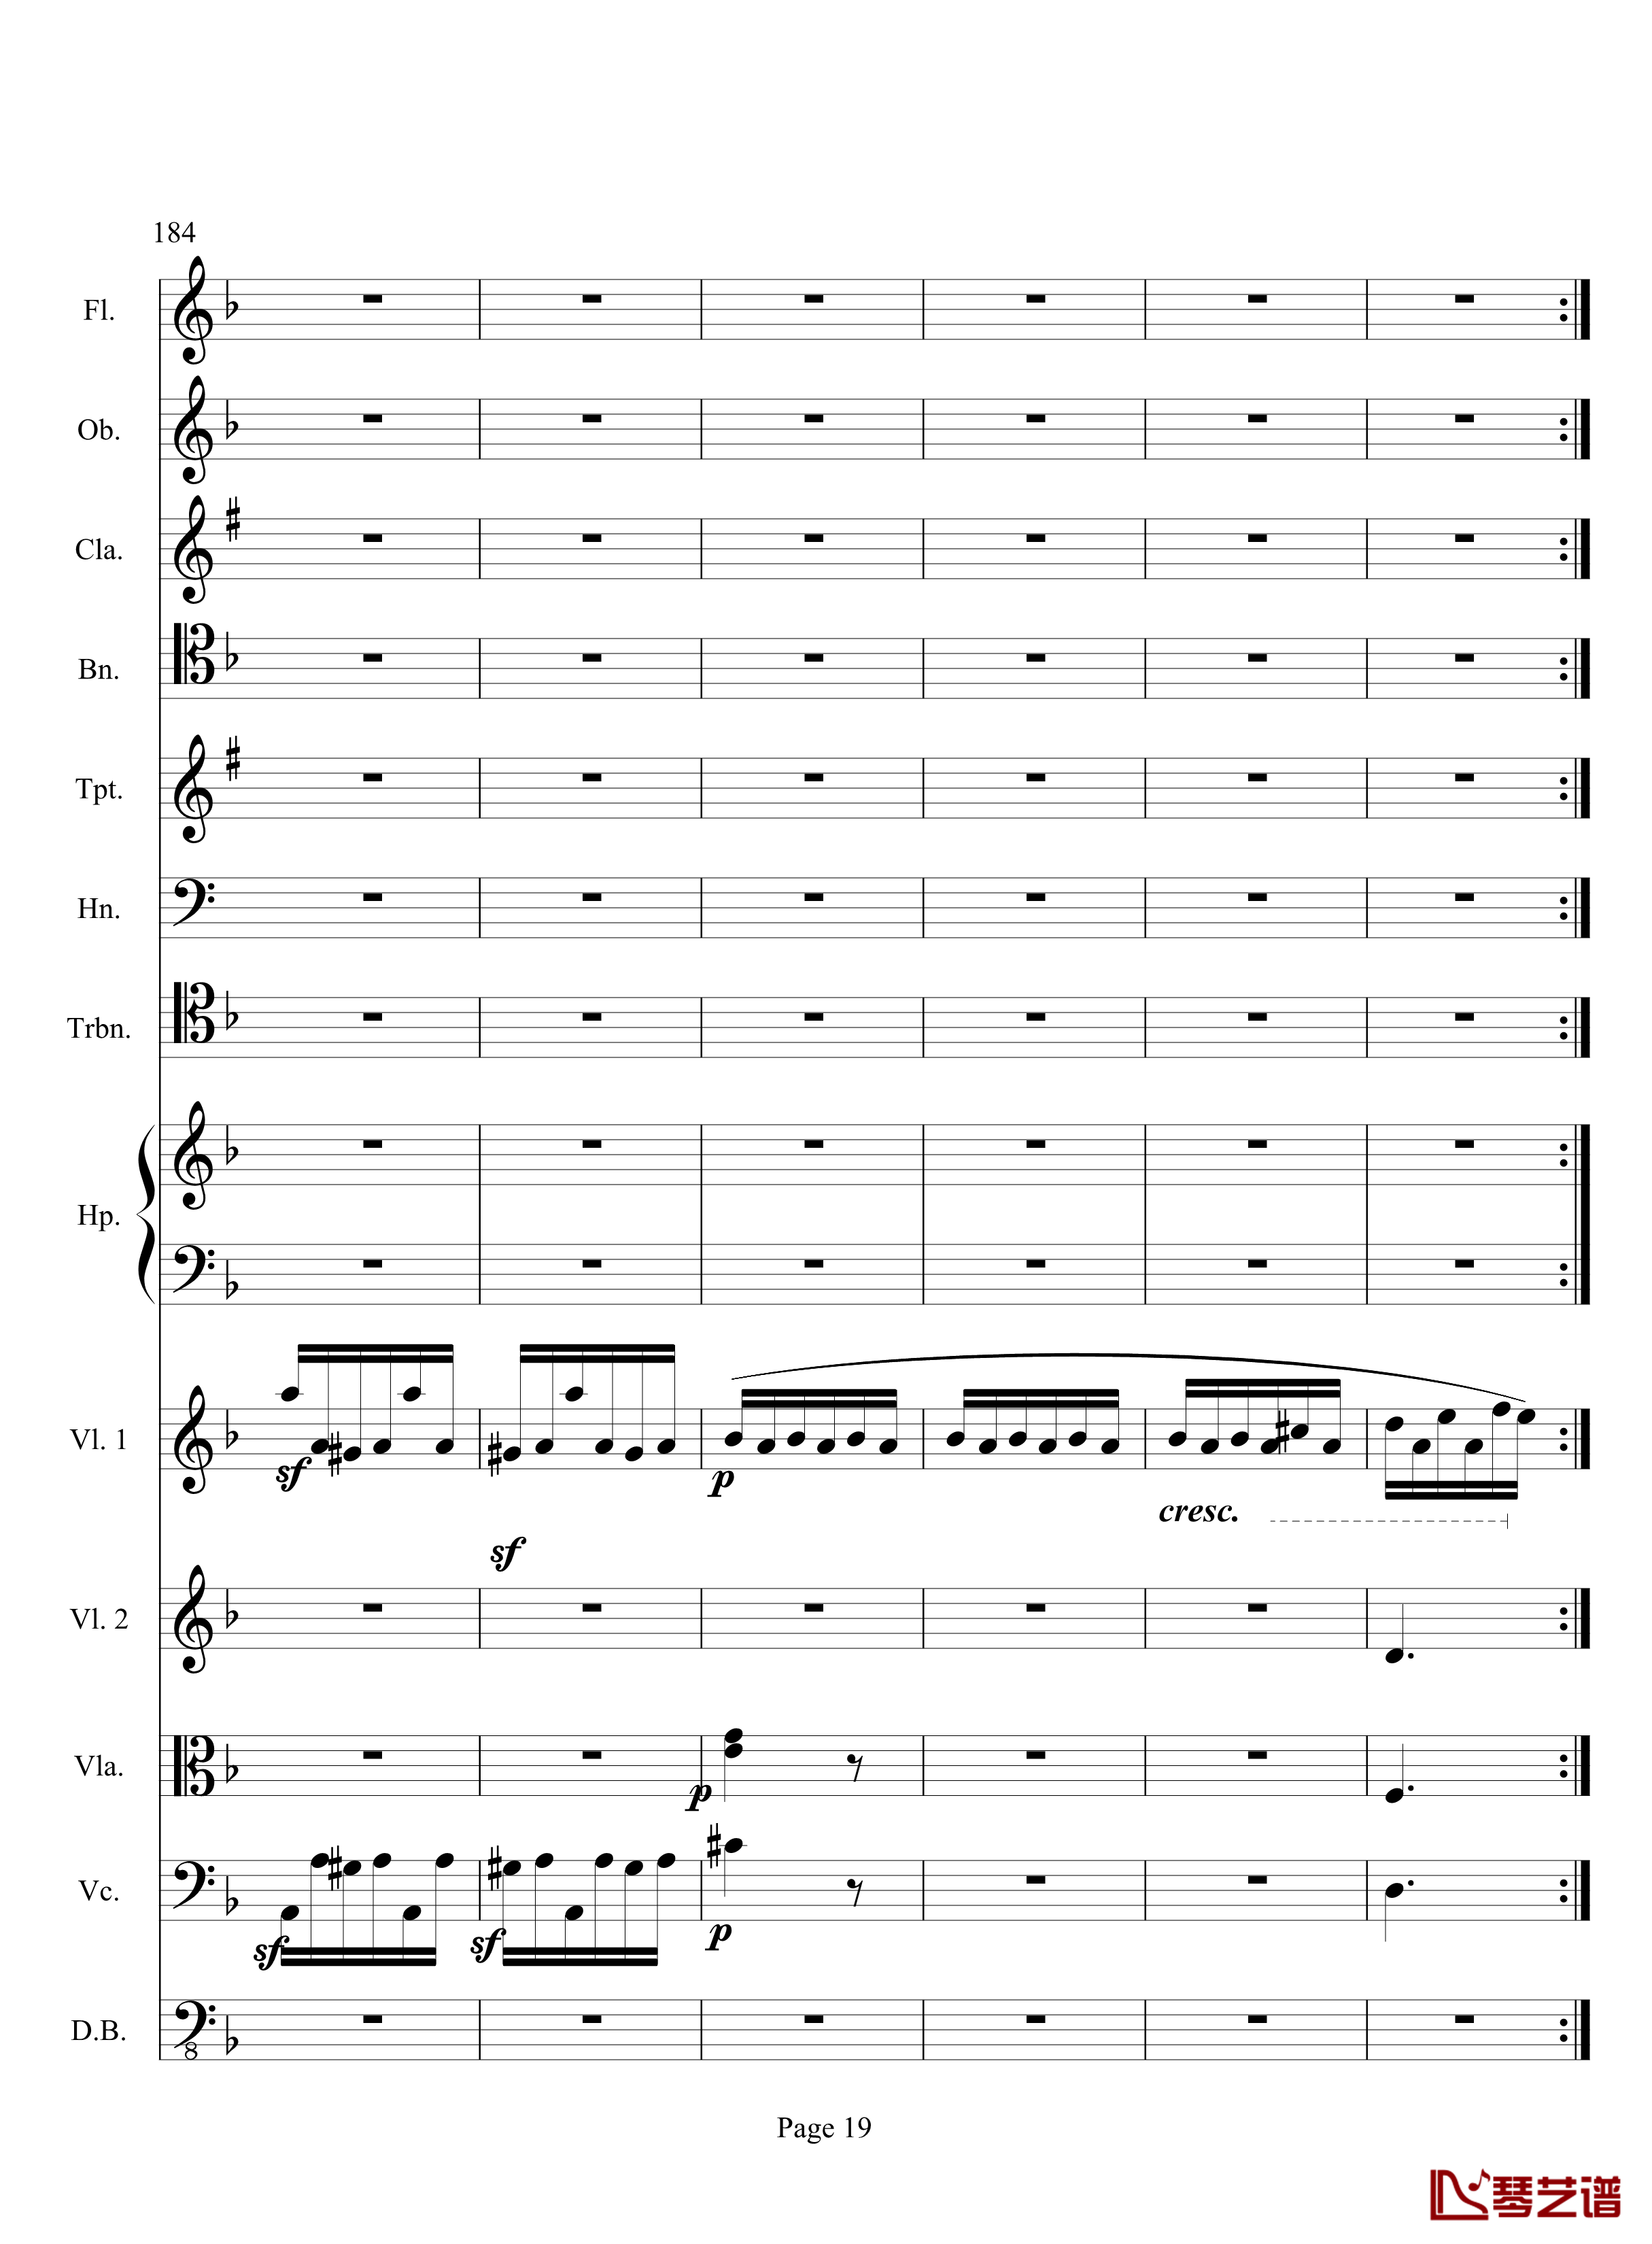 奏鸣曲之交响钢琴谱-第17首-Ⅲ-贝多芬-beethoven19